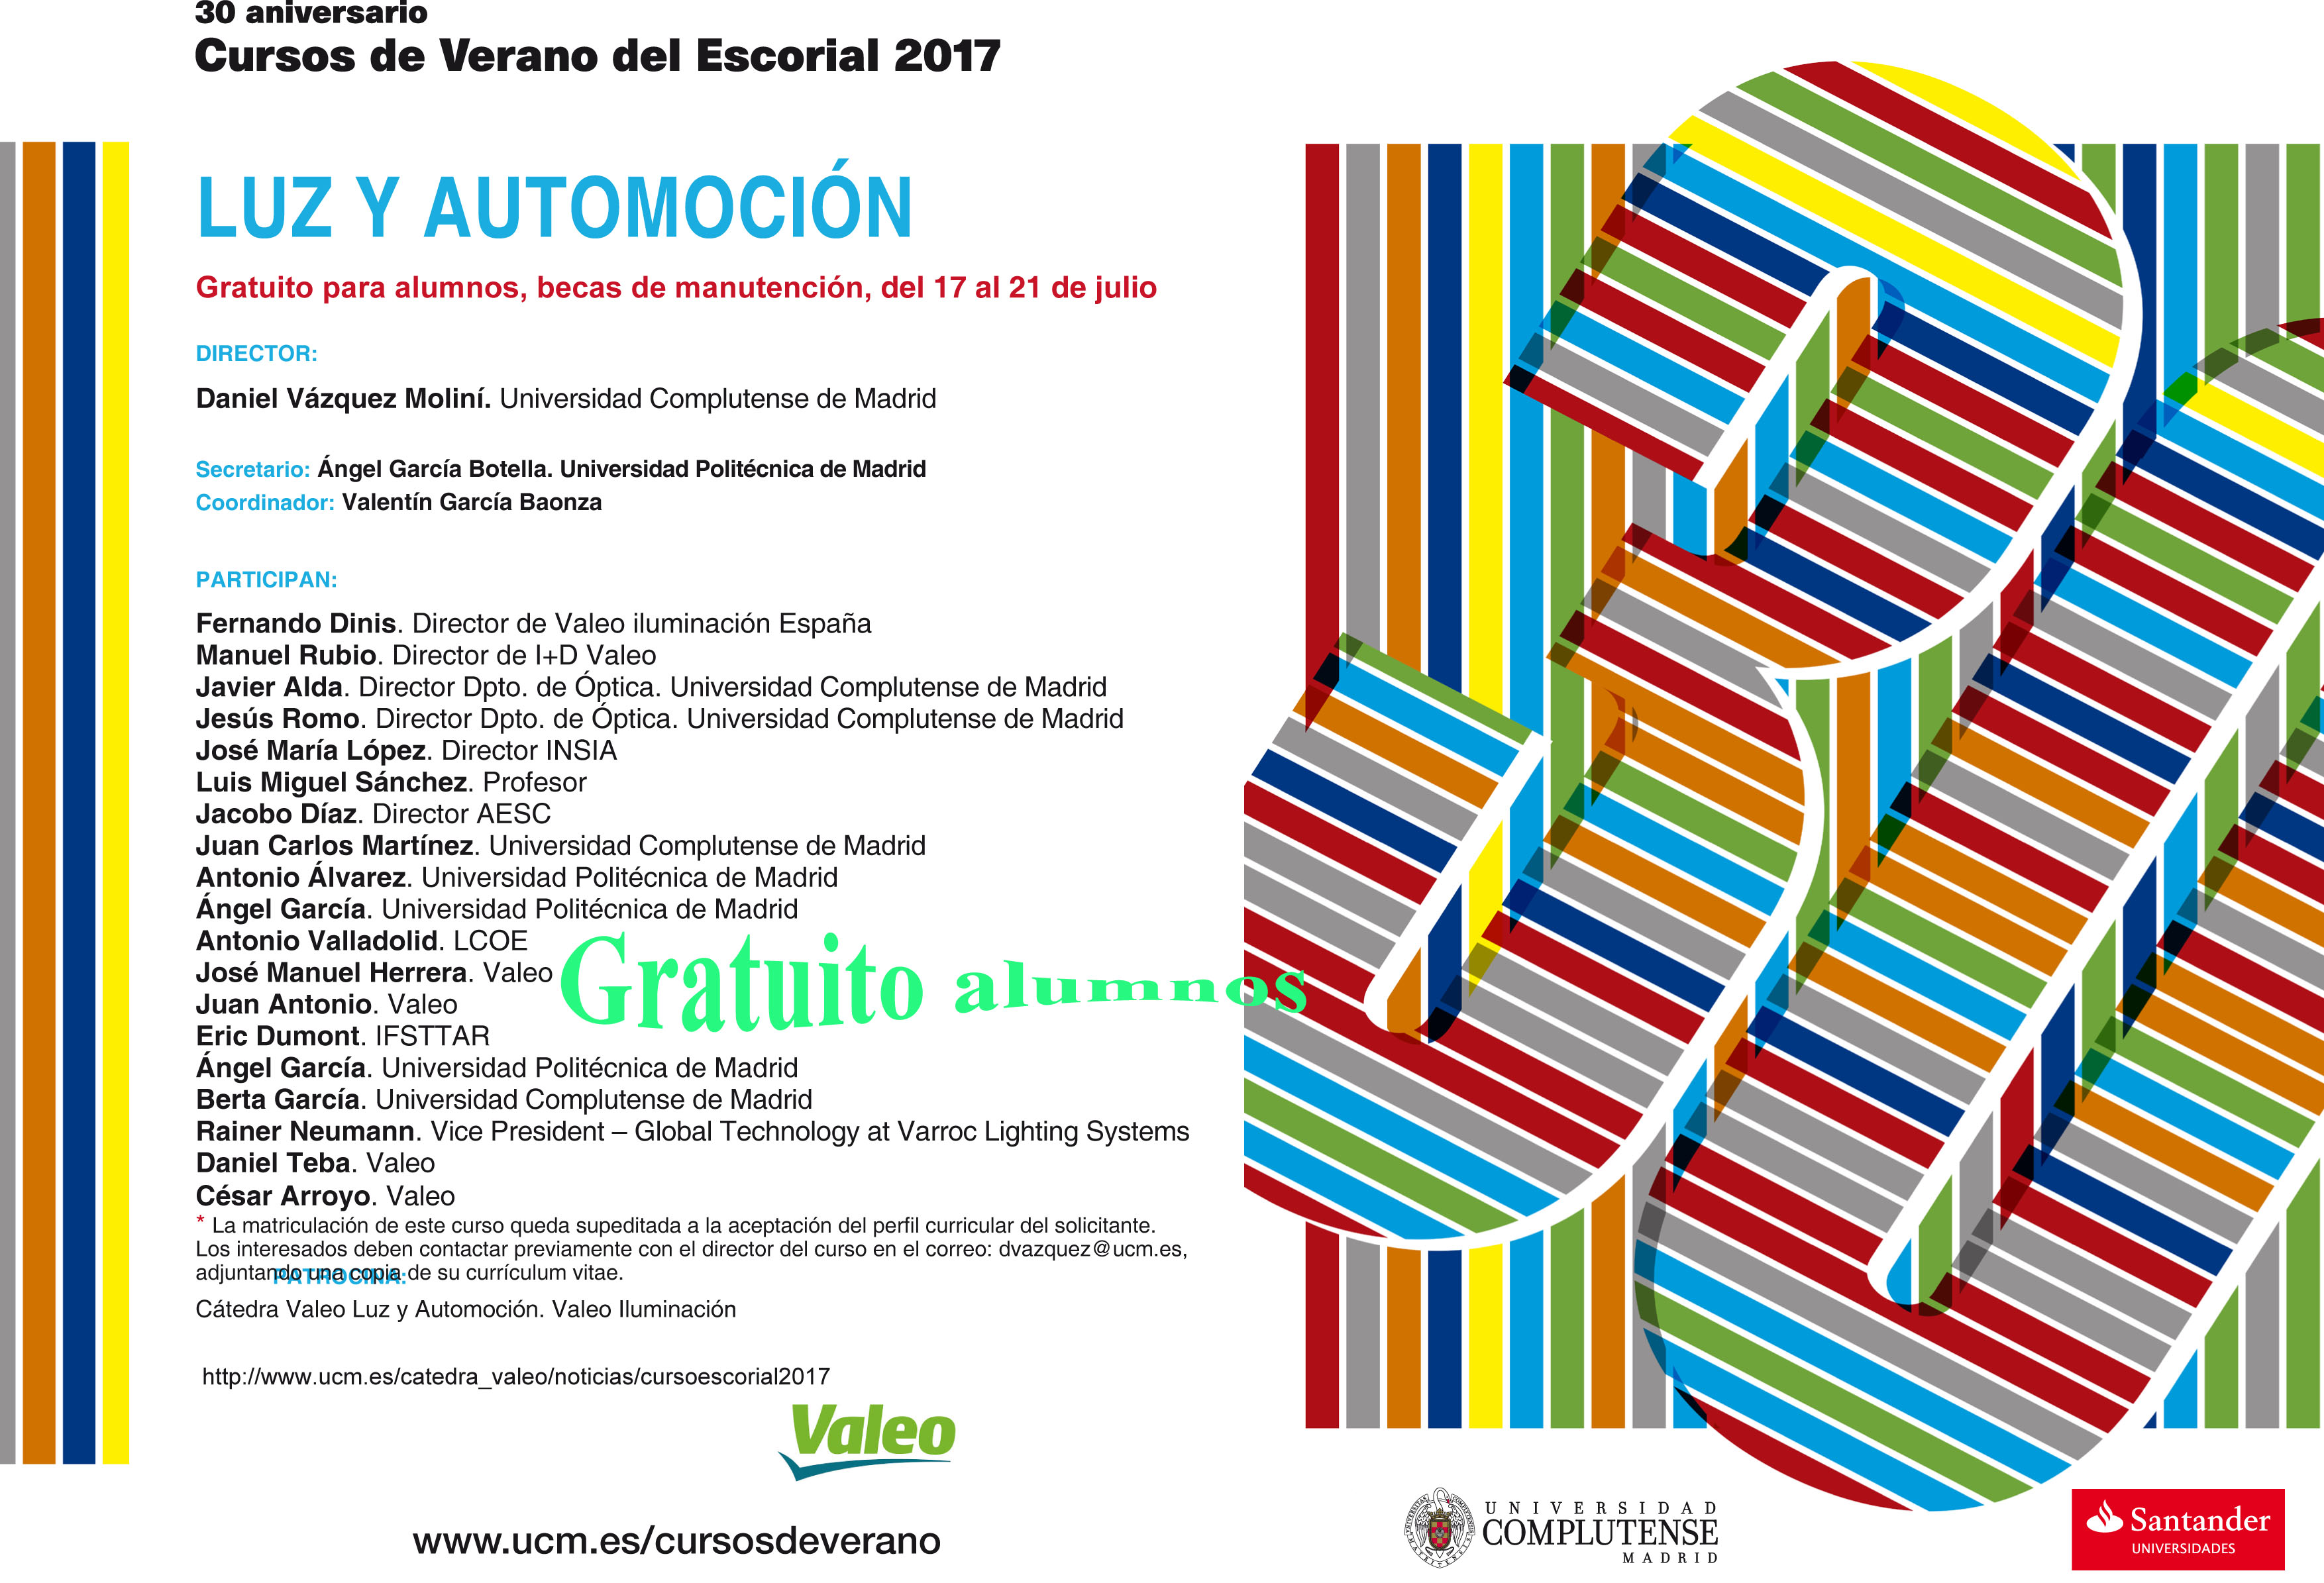 Curso de Verano del Escorial 2017. "Luz y Automoción"